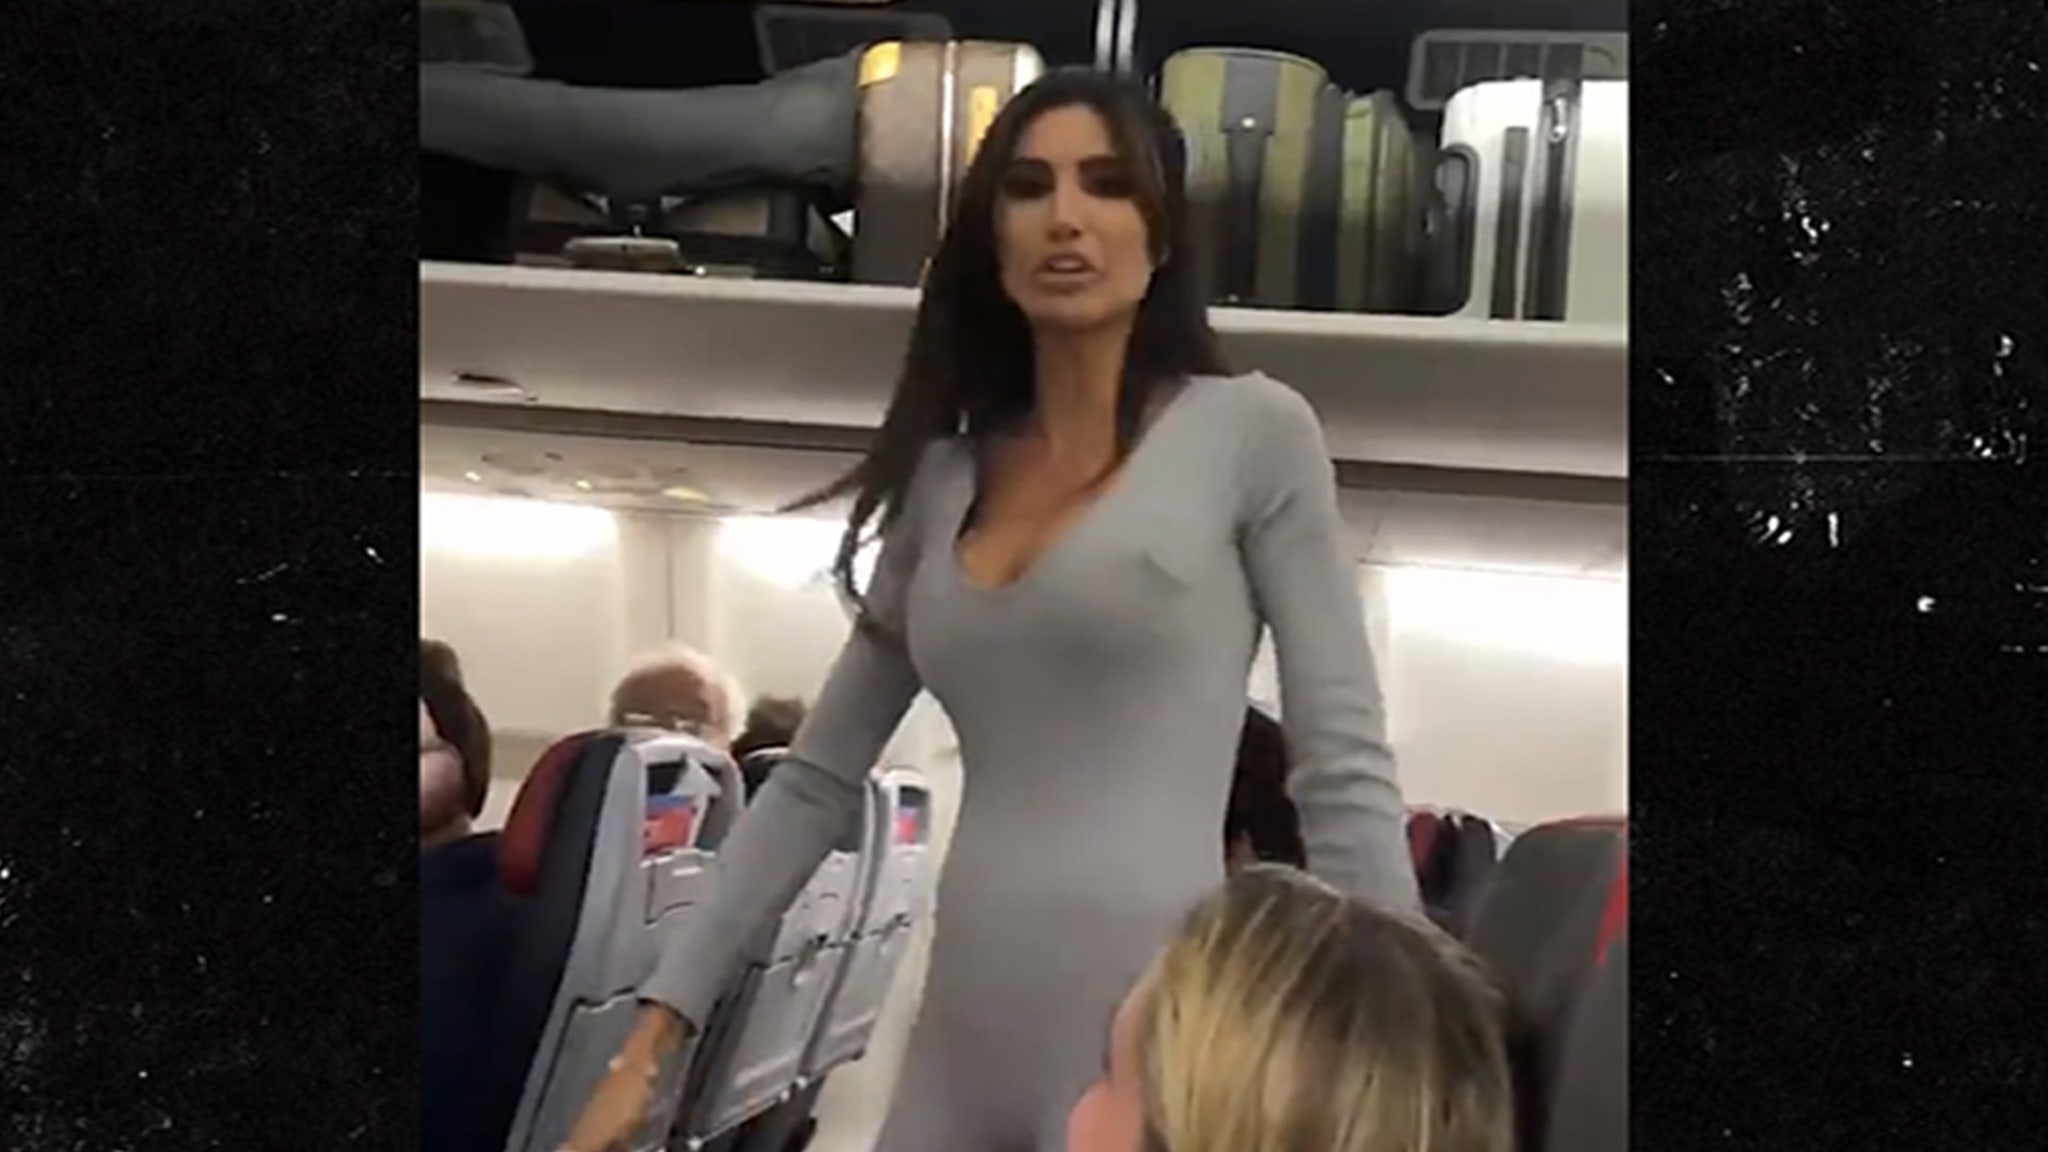 Seksowna kobieta w garniturze wysiada z samolotu i twierdzi, że jest sławna na IG